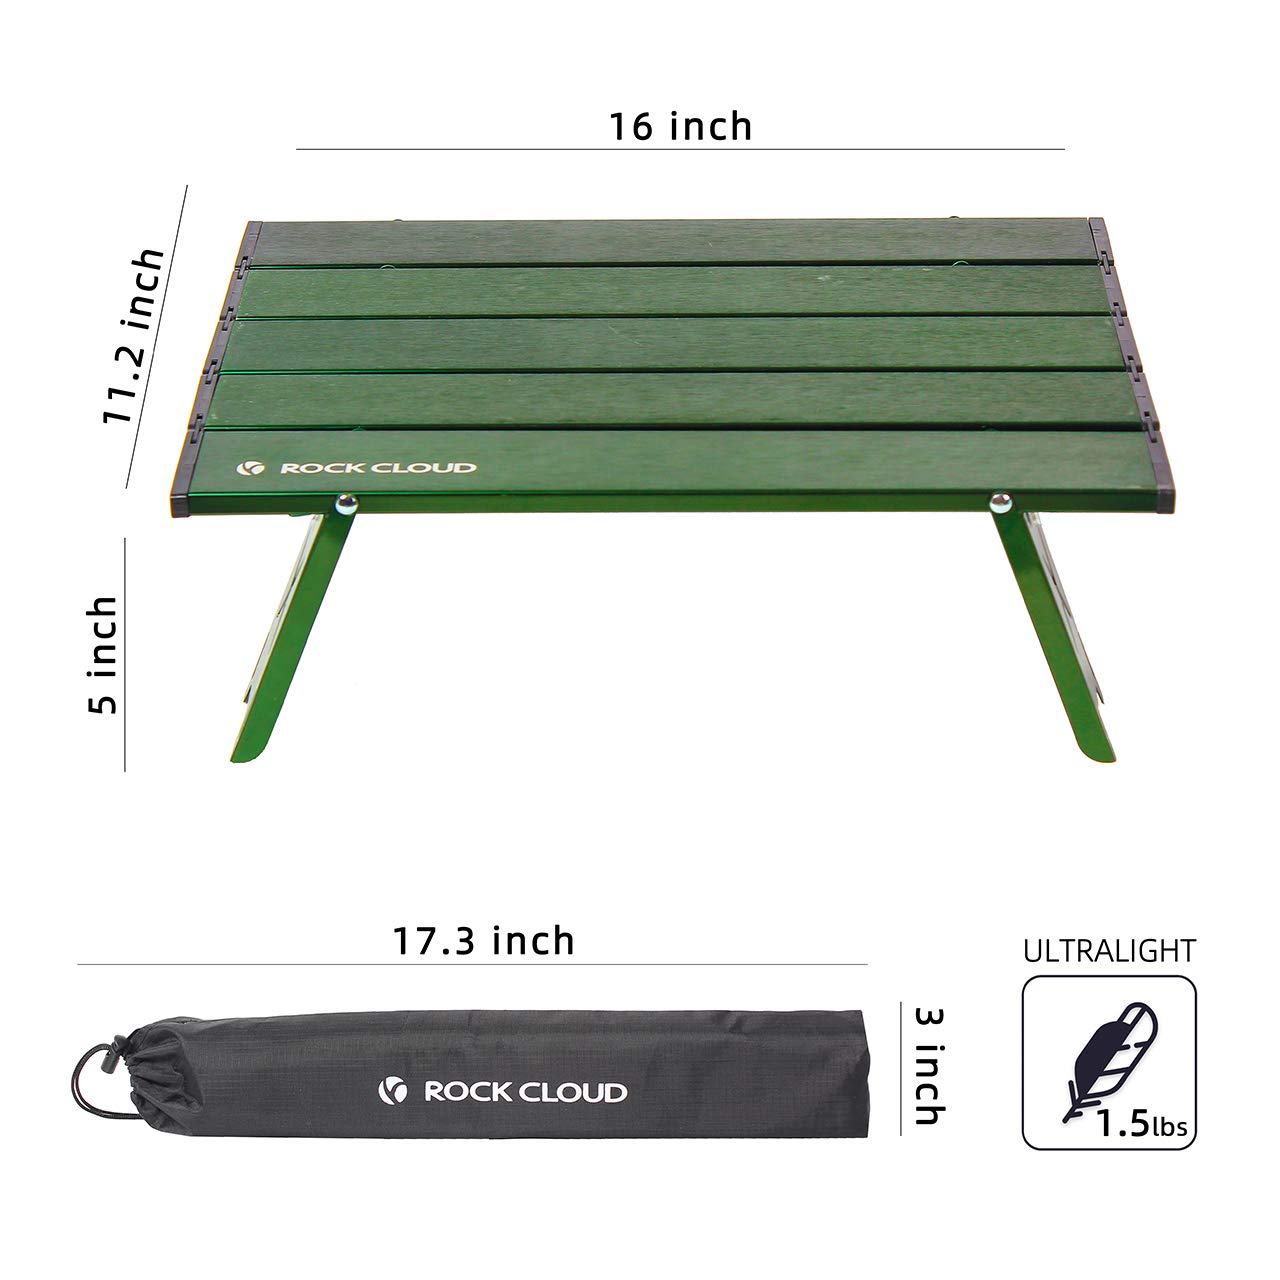 ROCK CLOUD Folding Beach Table Aluminum Portable Camping Table Ultralight, Green